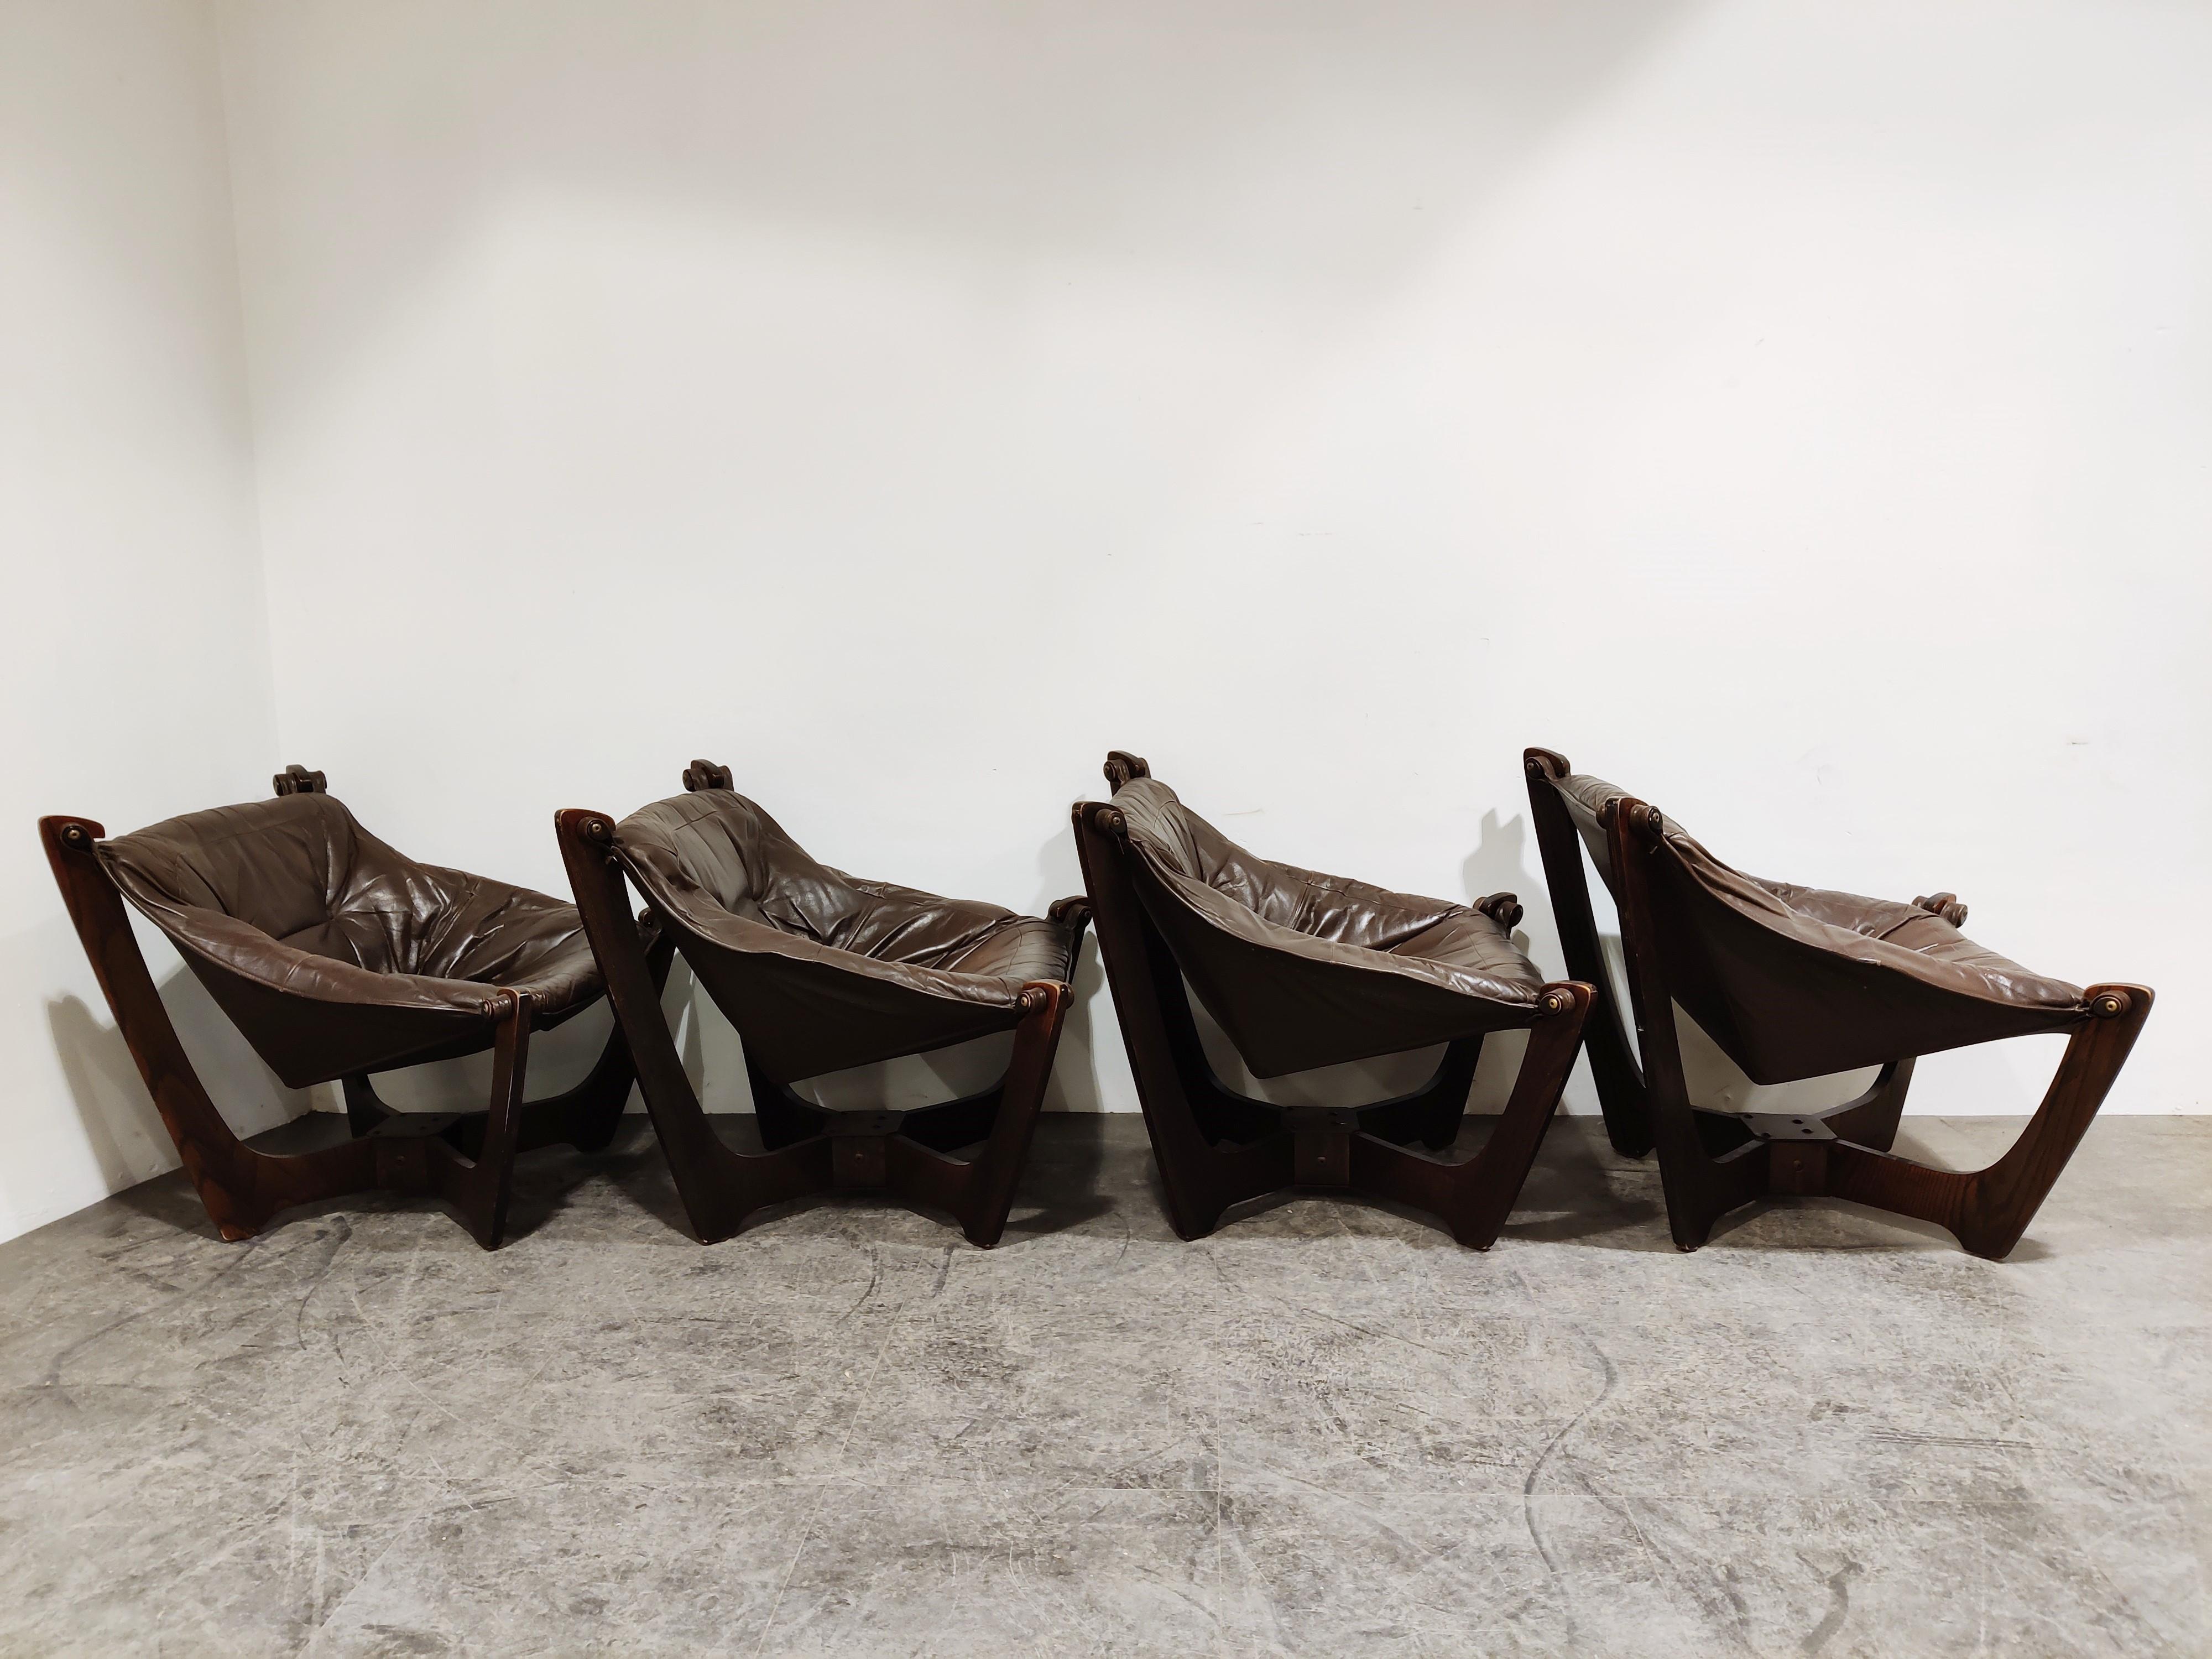 Luna Lounge Stühle von Odd Knutsen:: 1970er Jahre (Skandinavische Moderne)